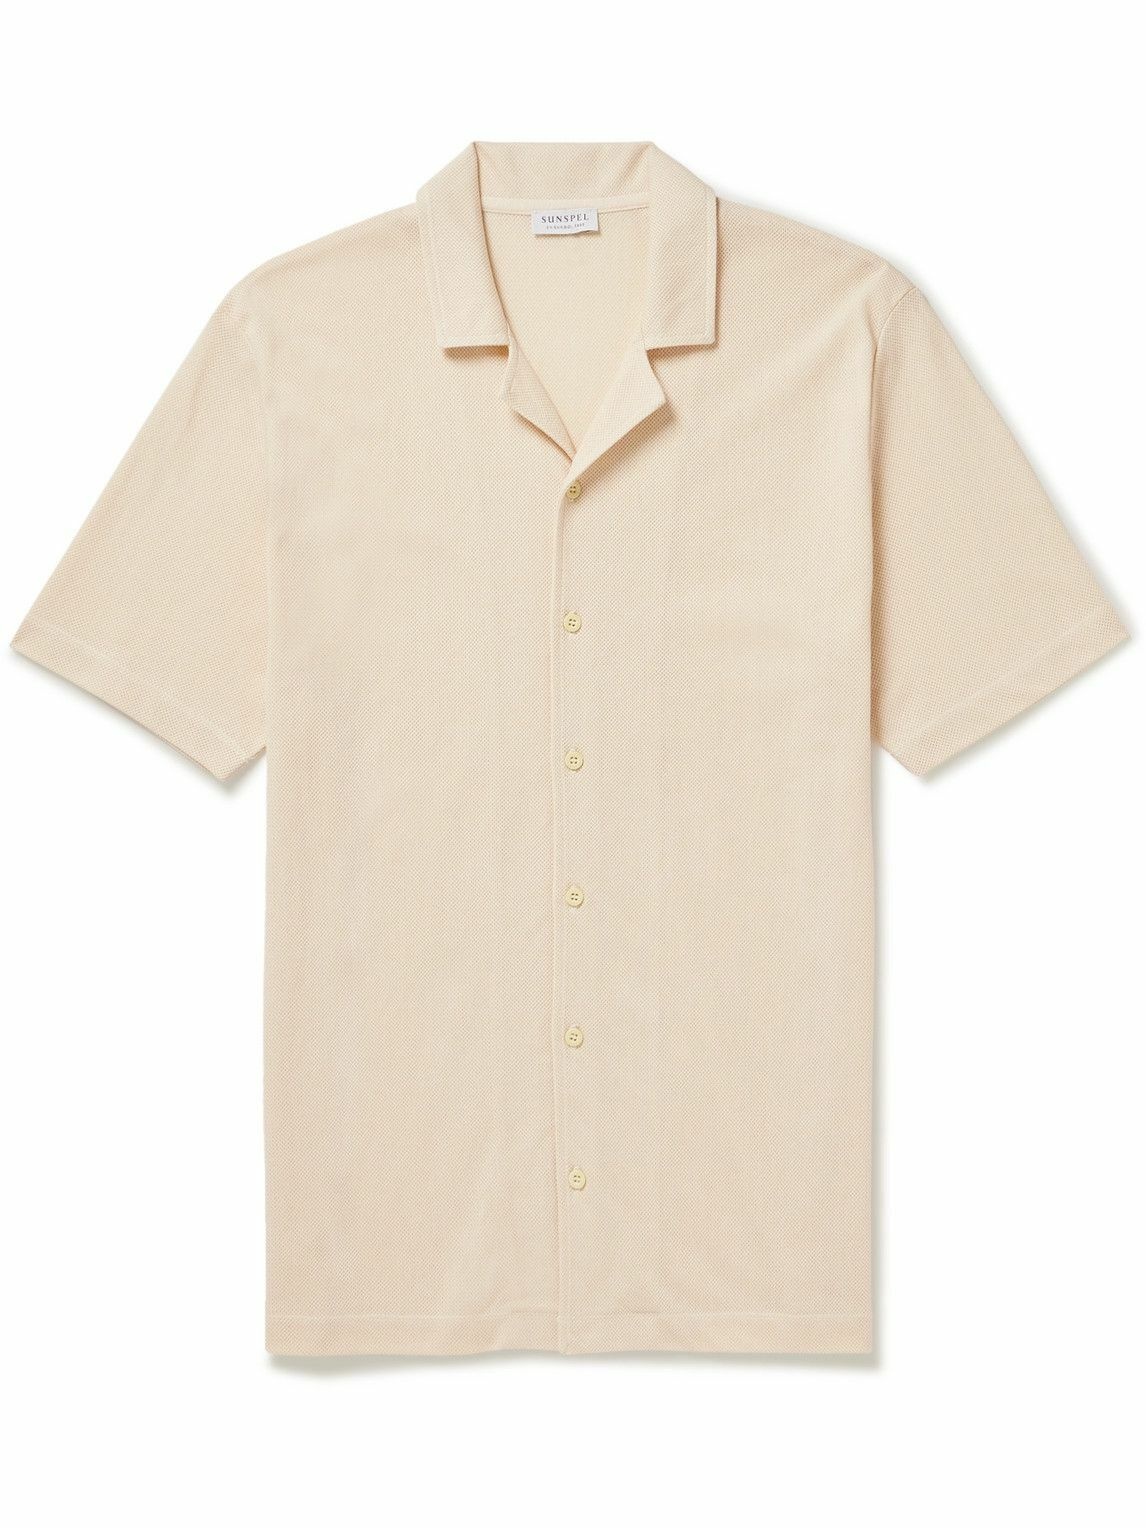 Sunspel - Riviera Camp-Collar Honeycomb-Knit Cotton Shirt - White Sunspel